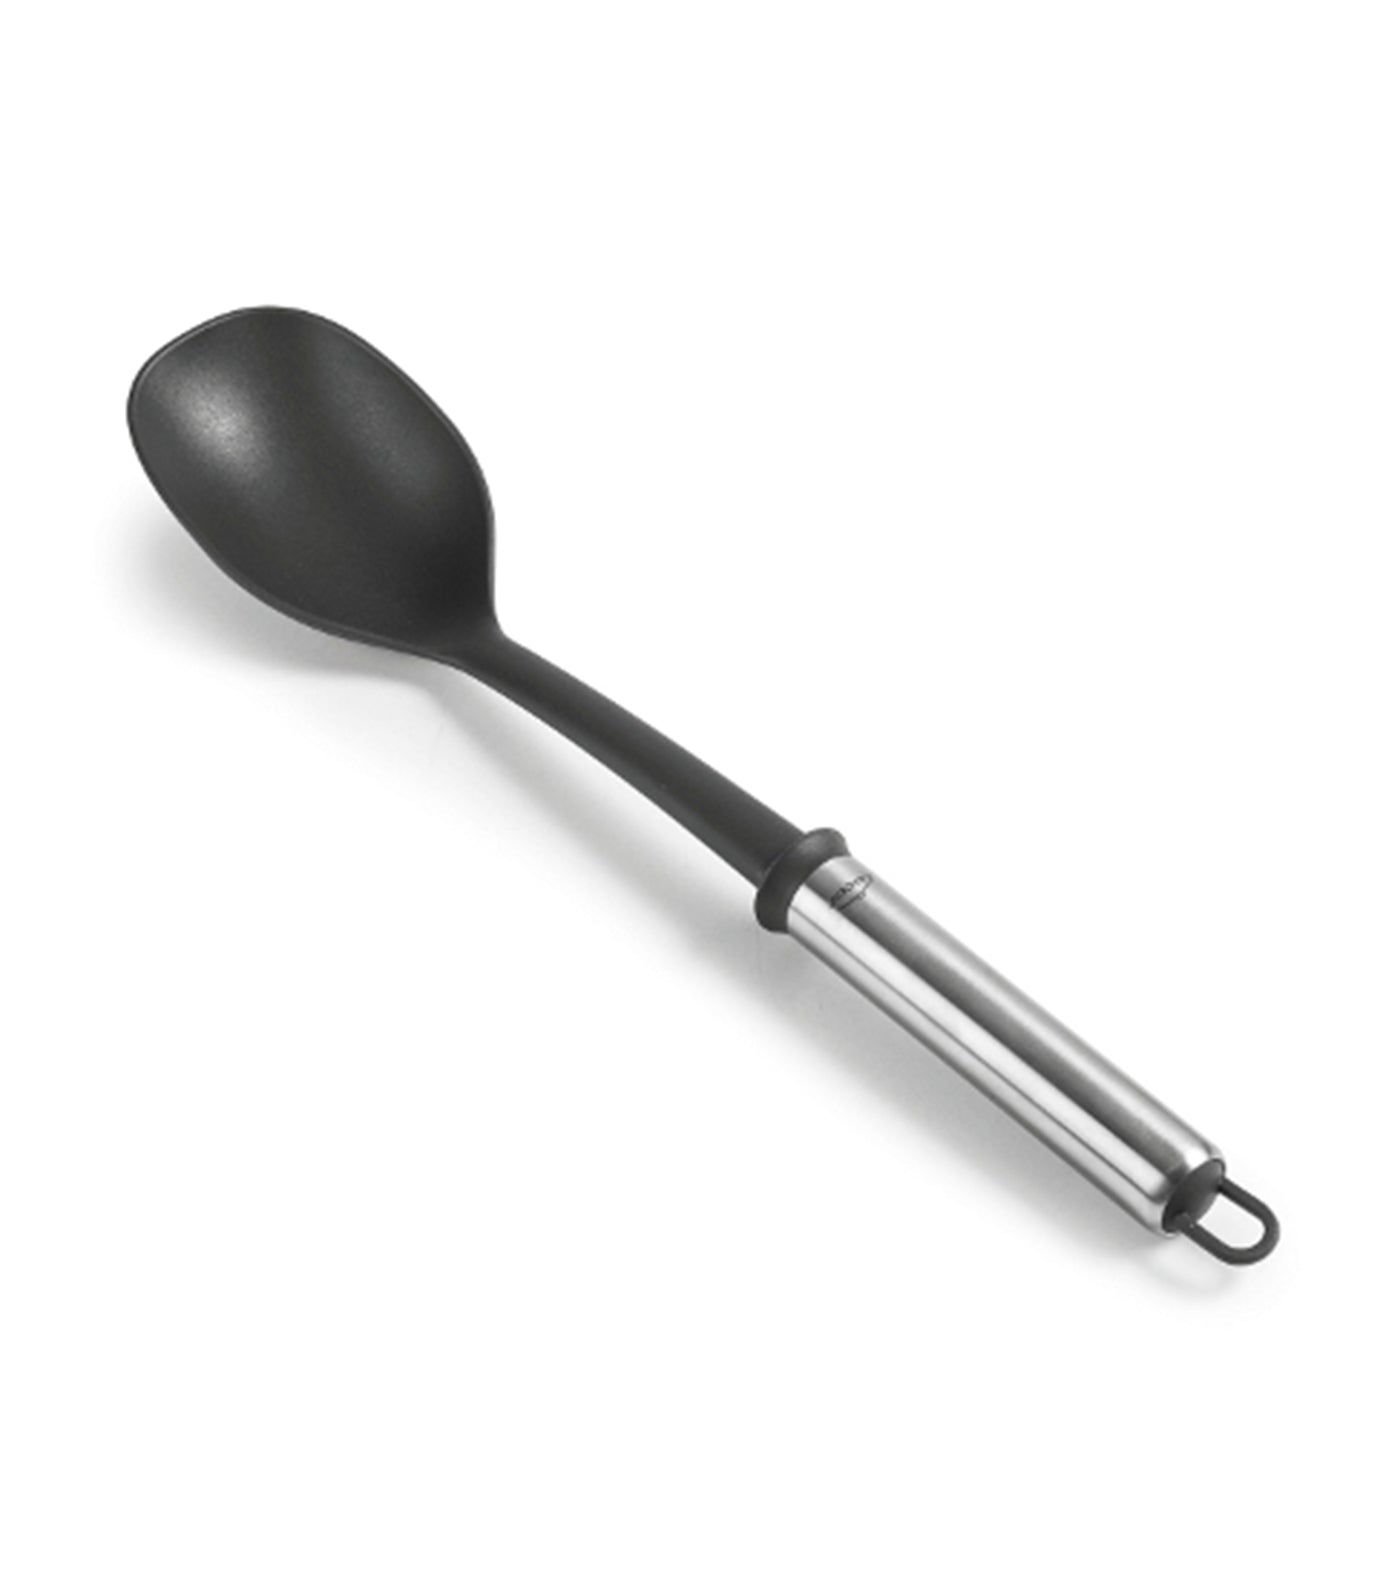 Spoon Due